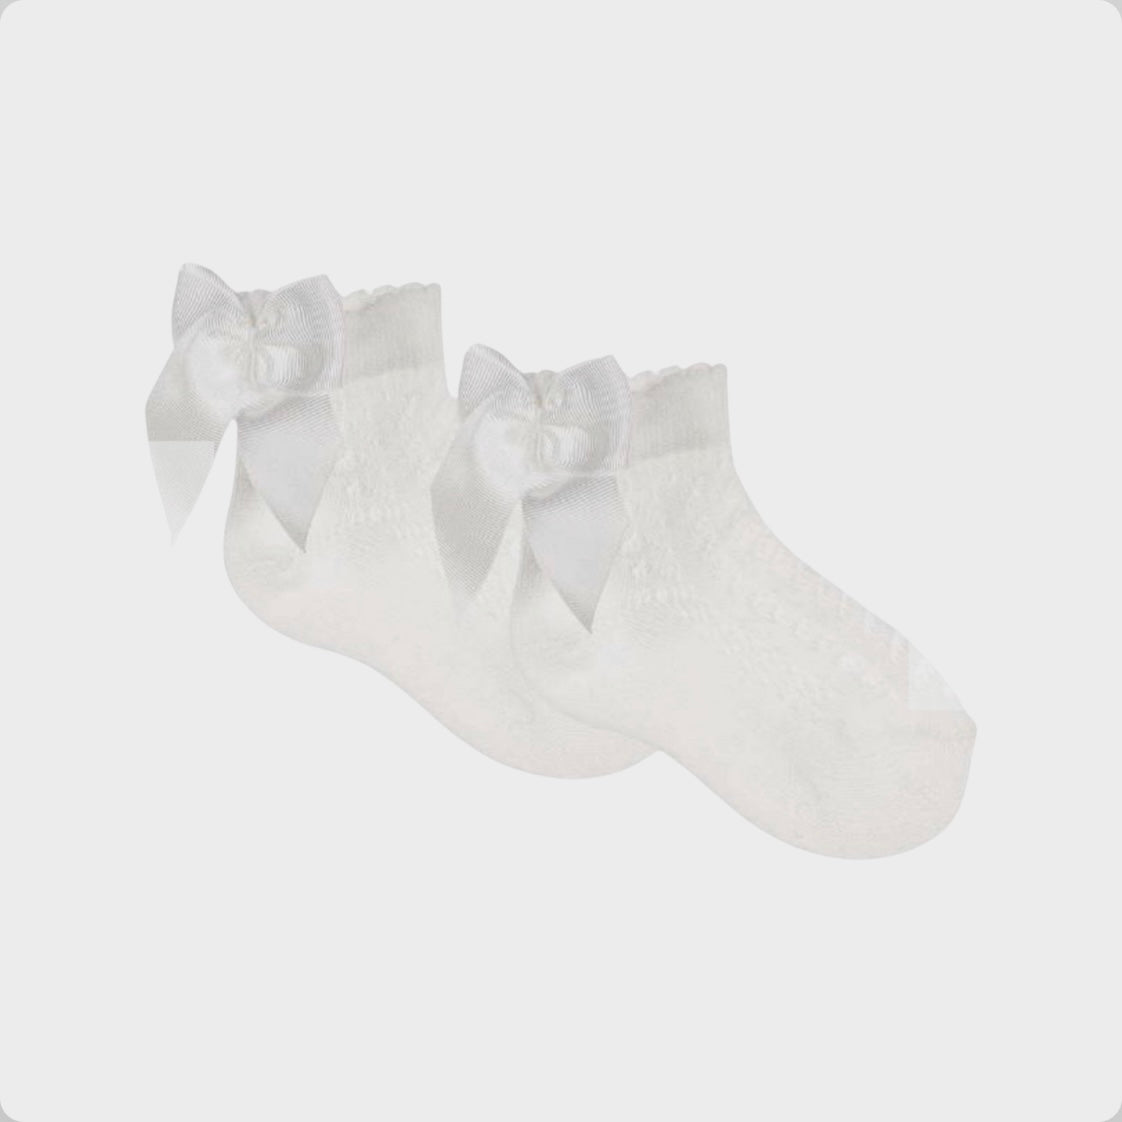 Meia Pata Girls White Perle Ankle Socks